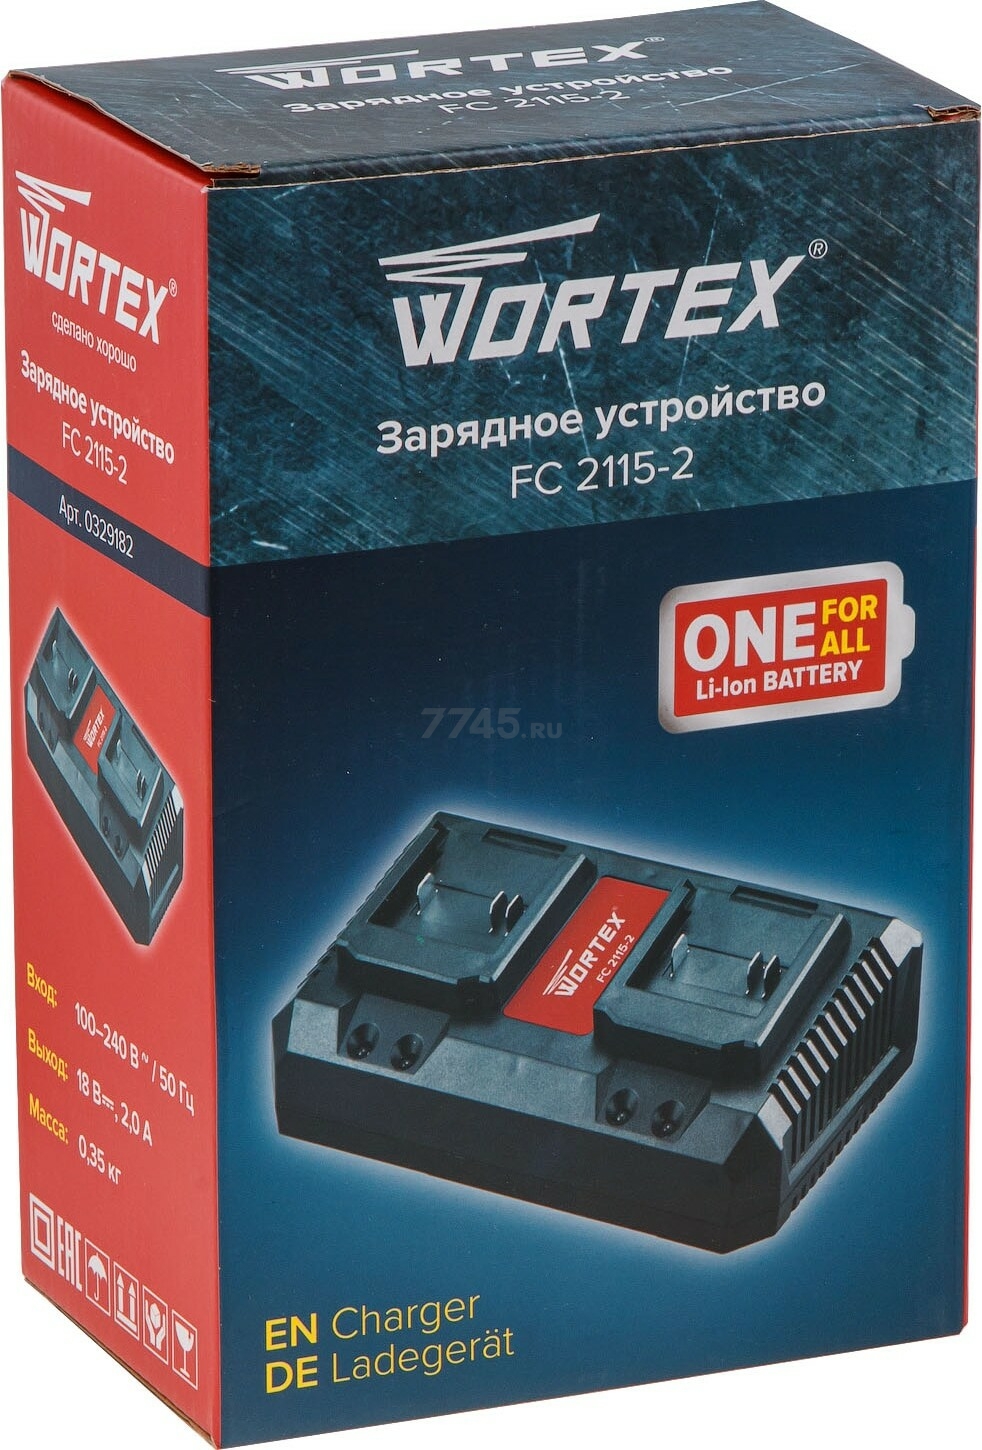 Зарядное устройство WORTEX FC 2115-2 ALL1 (0329182) - Фото 5